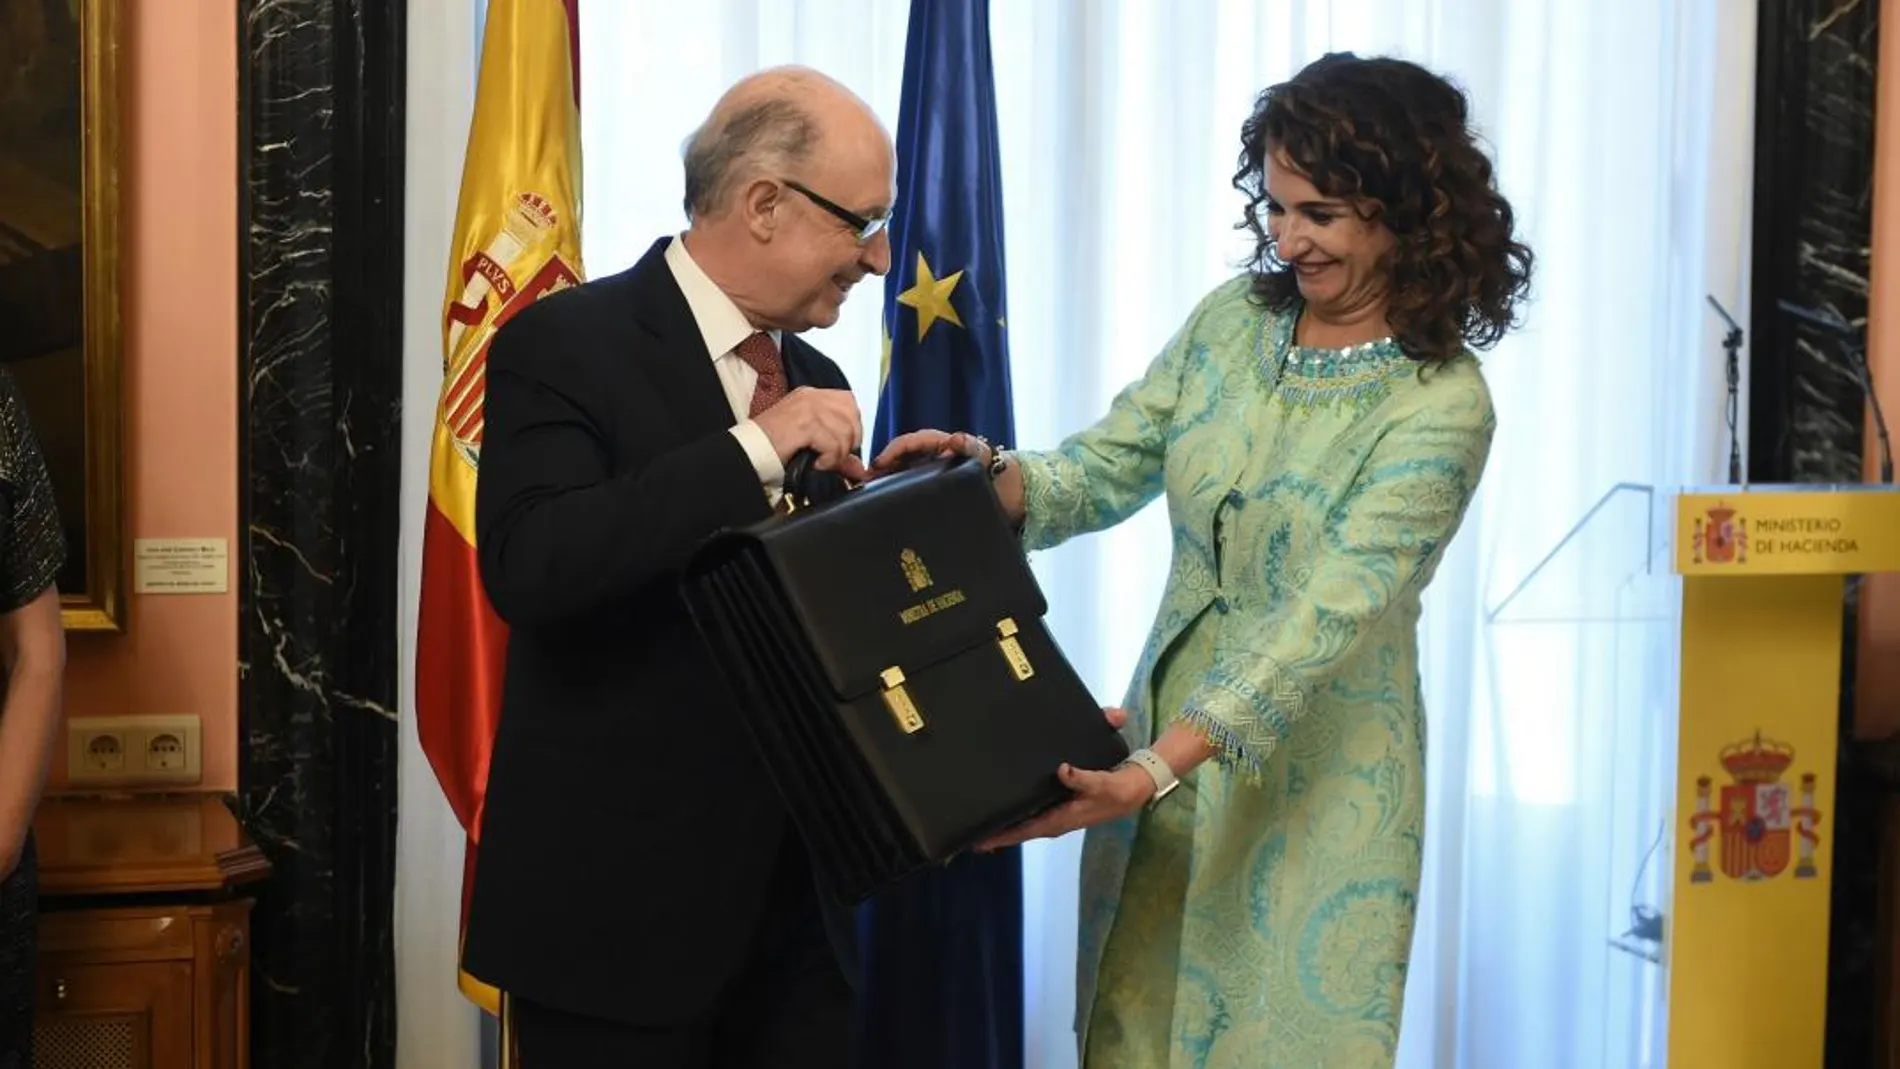 La nueva ministra de Hacienda, María Jesús Montero, recibe la cartera de la que es titular de manos del ministro saliente, Cristóbal Montoro. EFE/ Fernando Villar